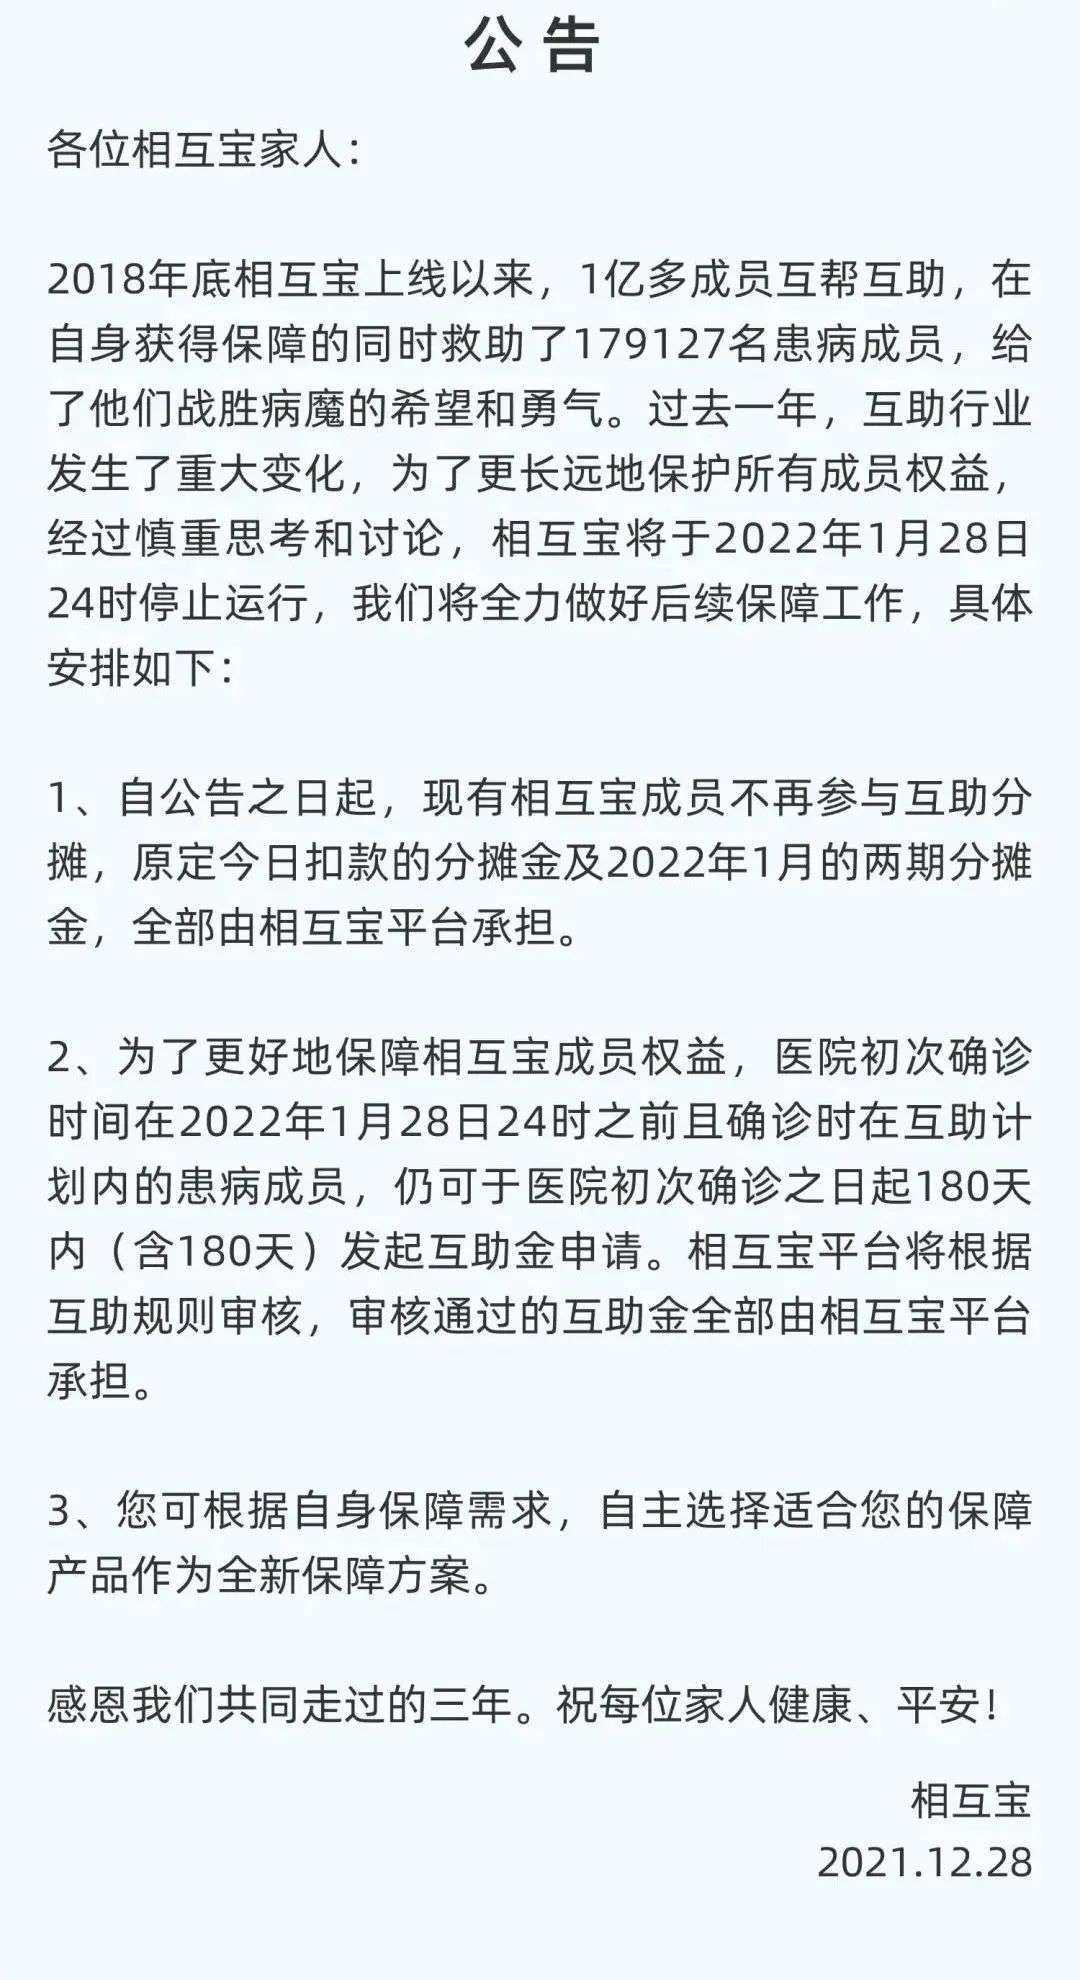 8点1氪丨奔驰广告模特“眯眯眼”惹争议；张庭林瑞阳公司涉嫌传销被查处；相互宝将于1月28日关停